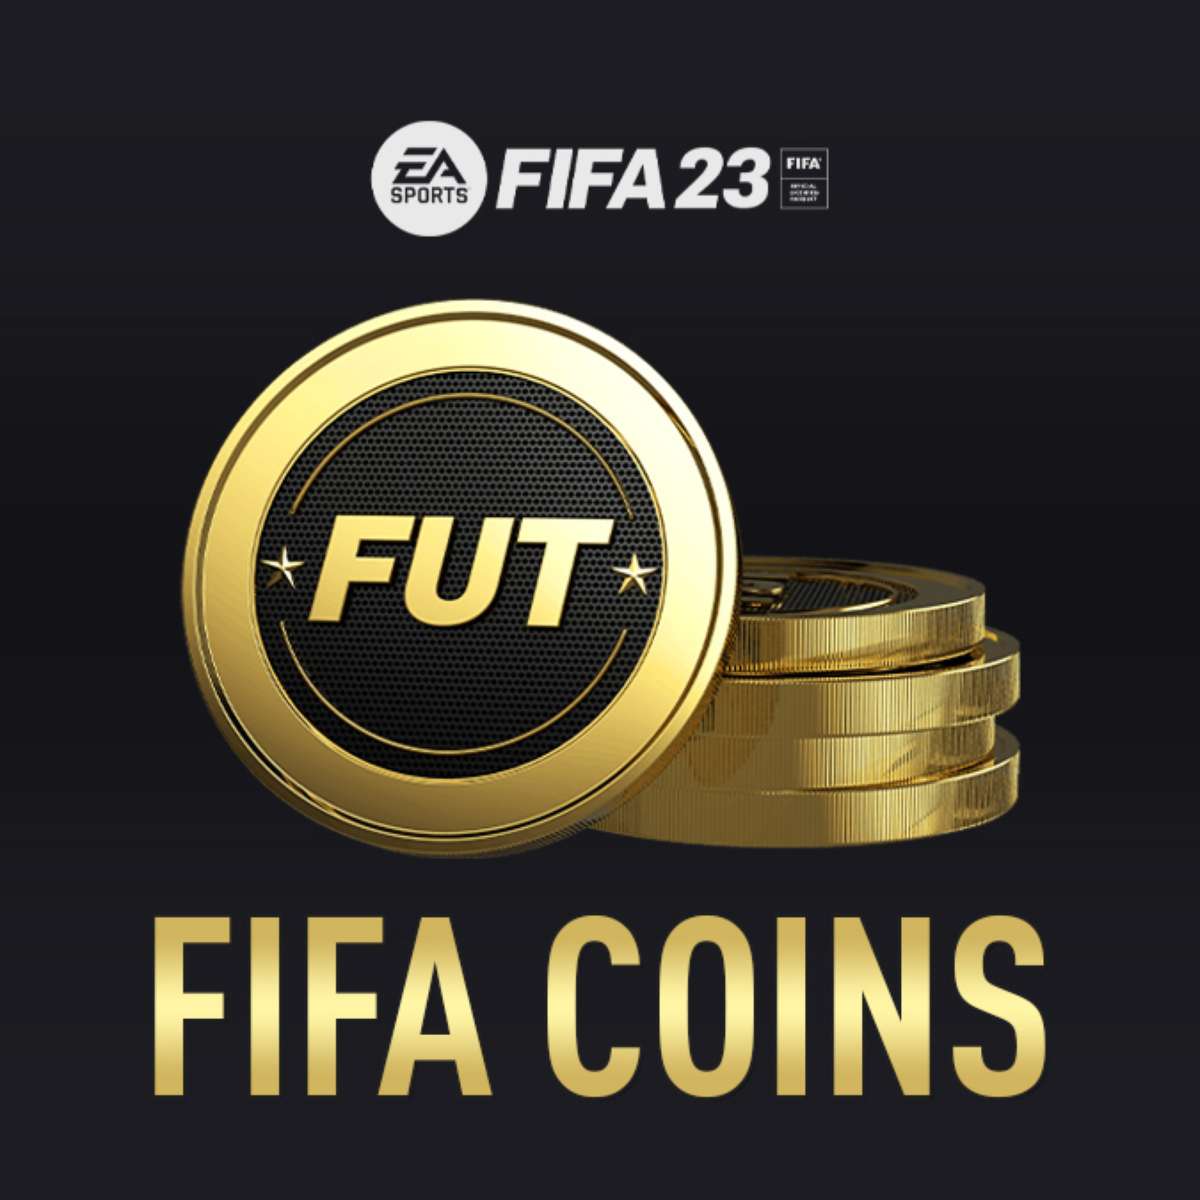 FIFA 23 e mais games para jogar de graça